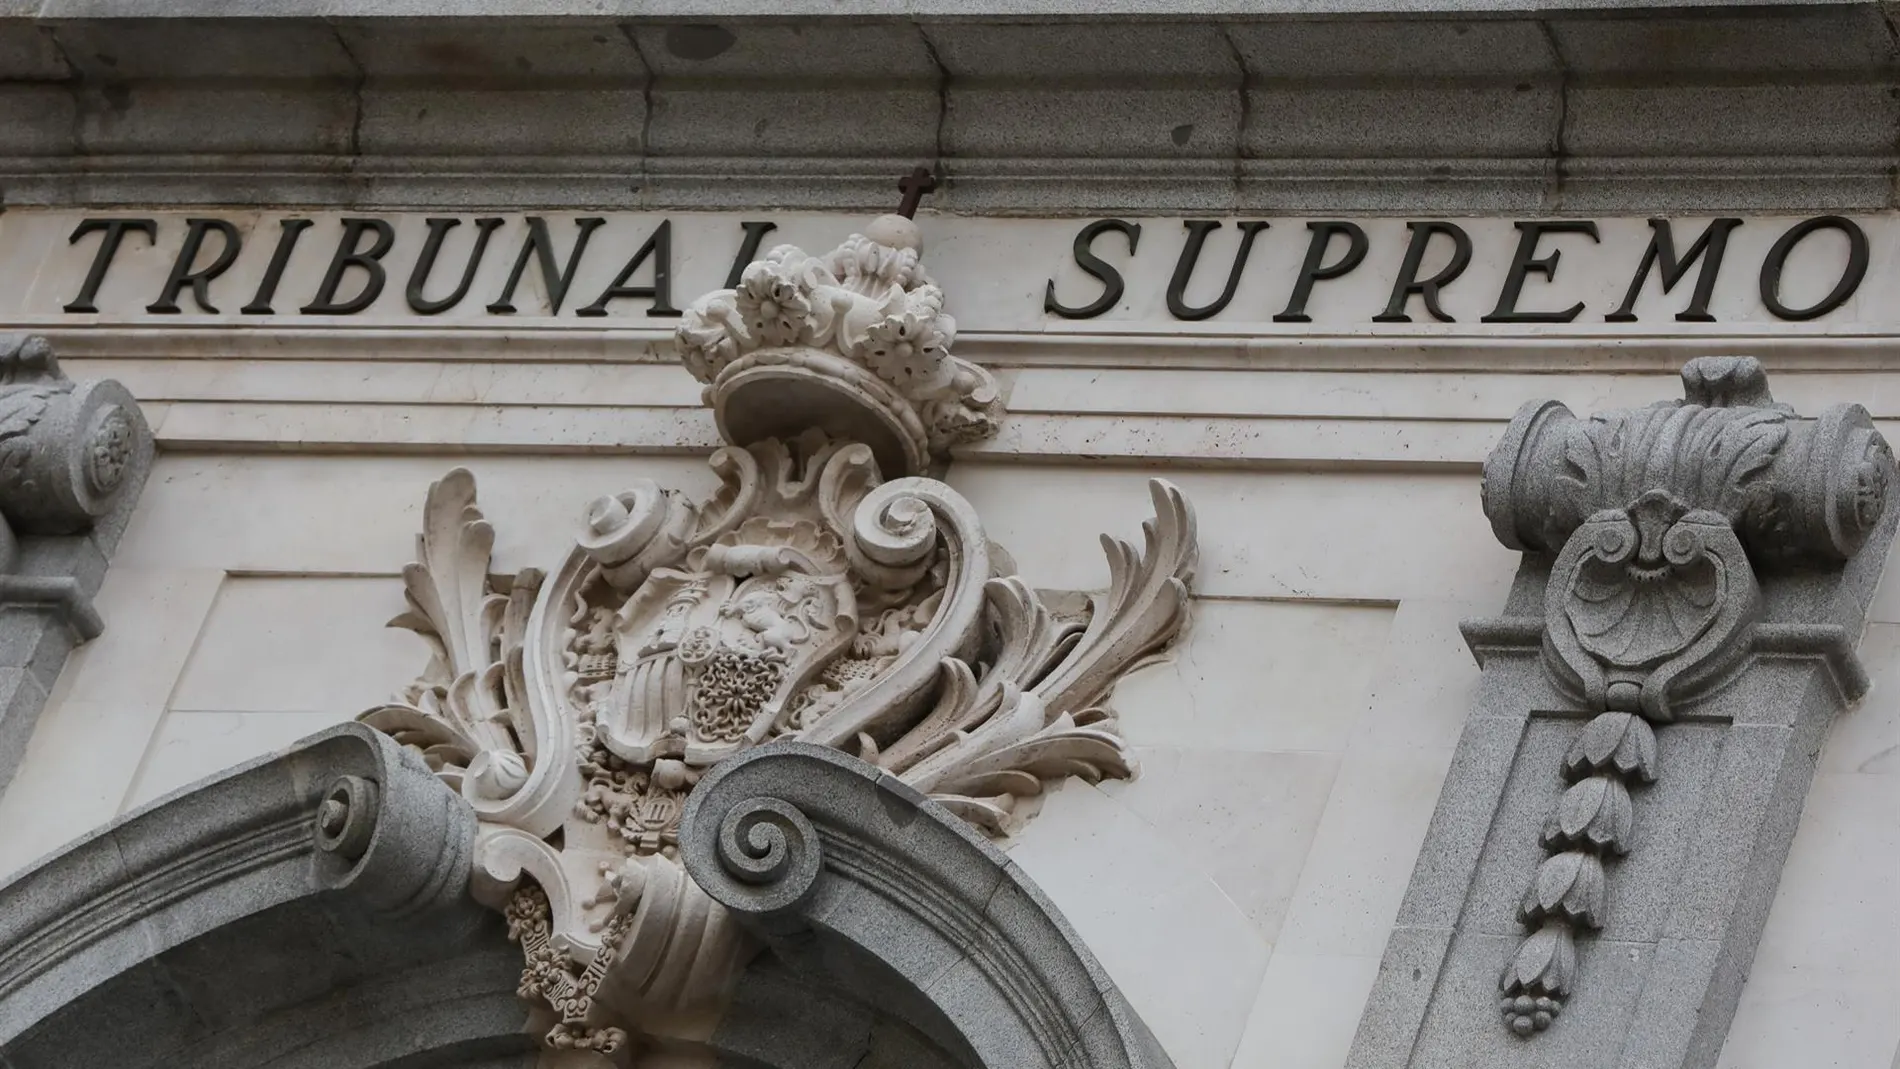 El Supremo avala que Hacienda precinte la caja de seguridad bancaria de una empresa sin autorización judicial